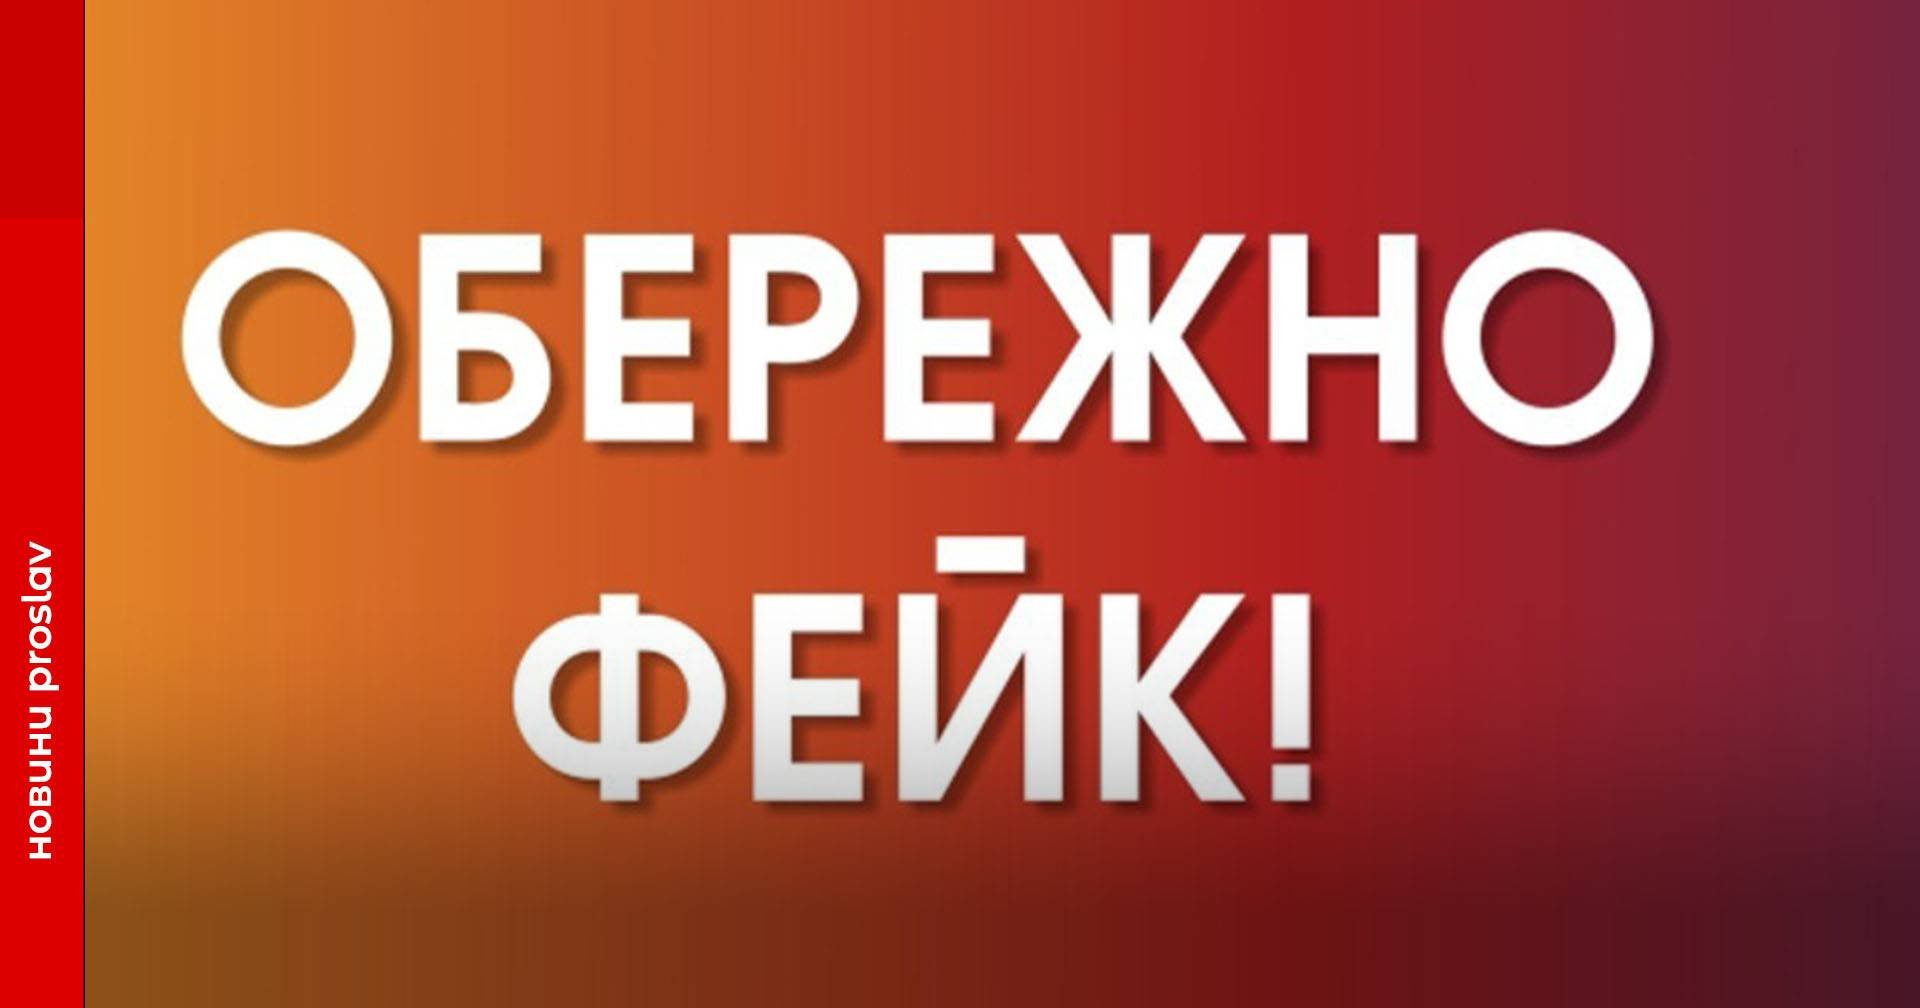 Черговий фейк від роспропаганди: у соцмережах поширюють лист Міносвіти щодо випускників призовного віку